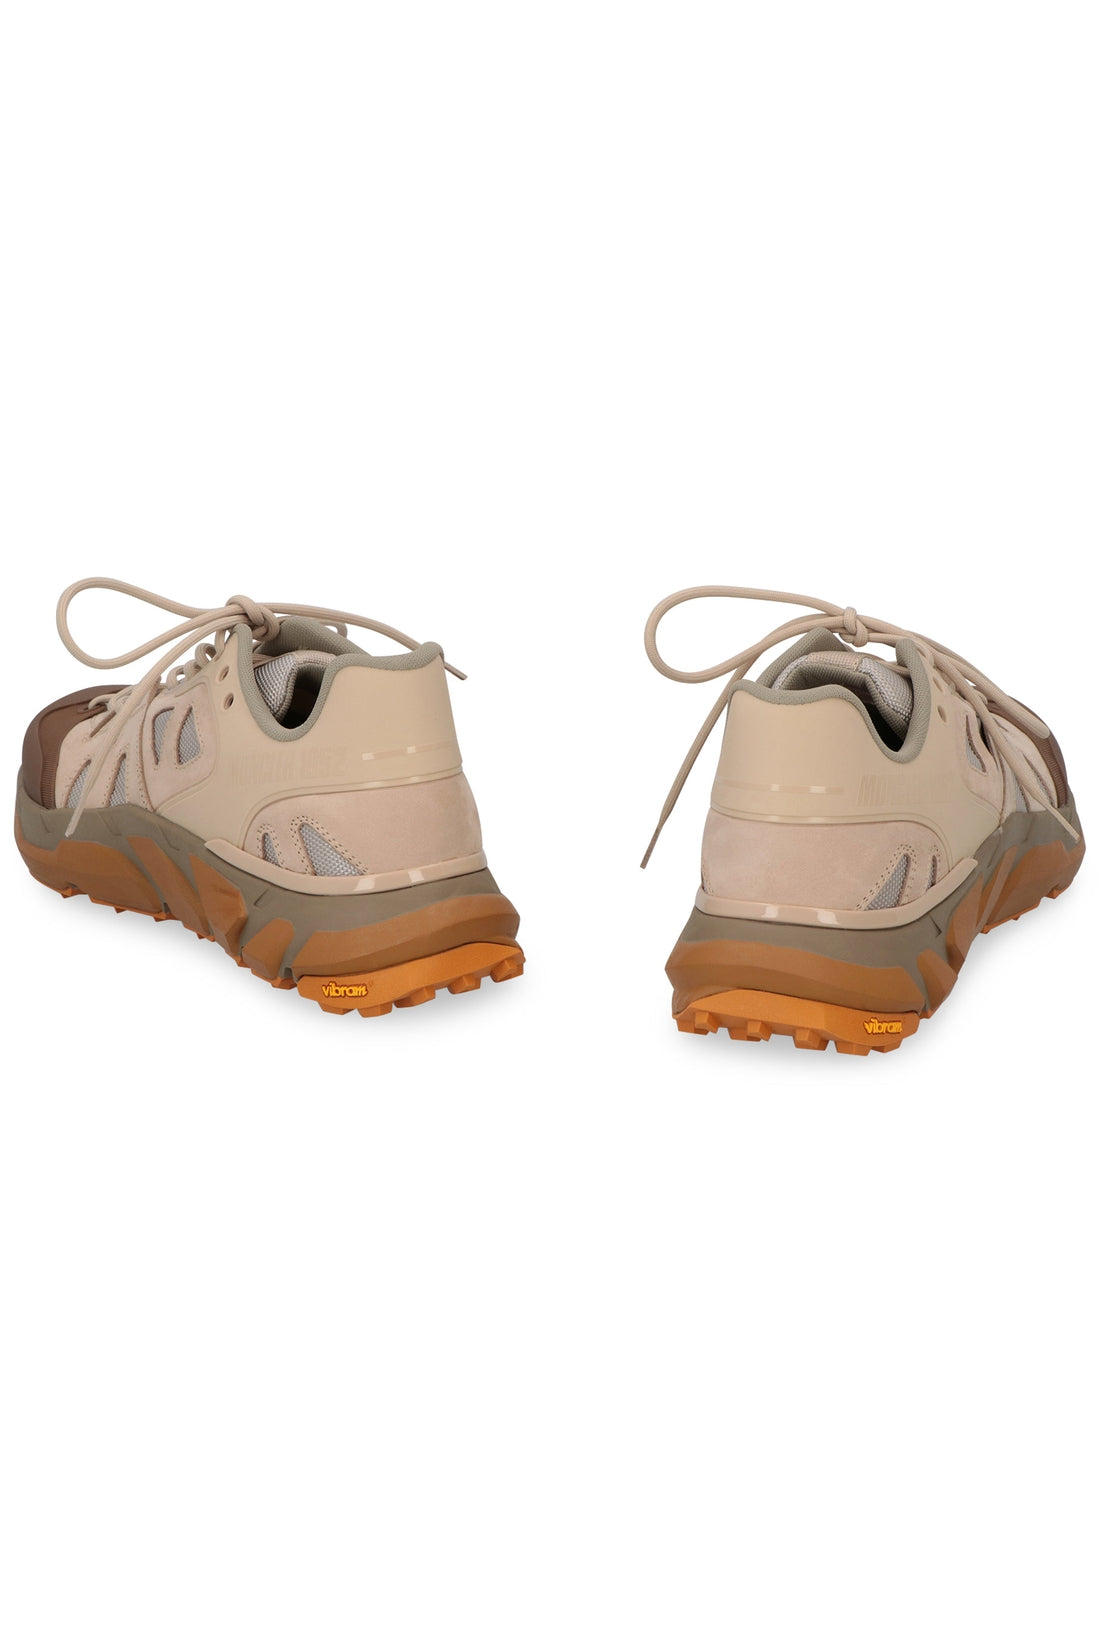 Moncler Genius-OUTLET-SALE-2 Moncler 1952 - Silencio low-top sneakers-ARCHIVIST